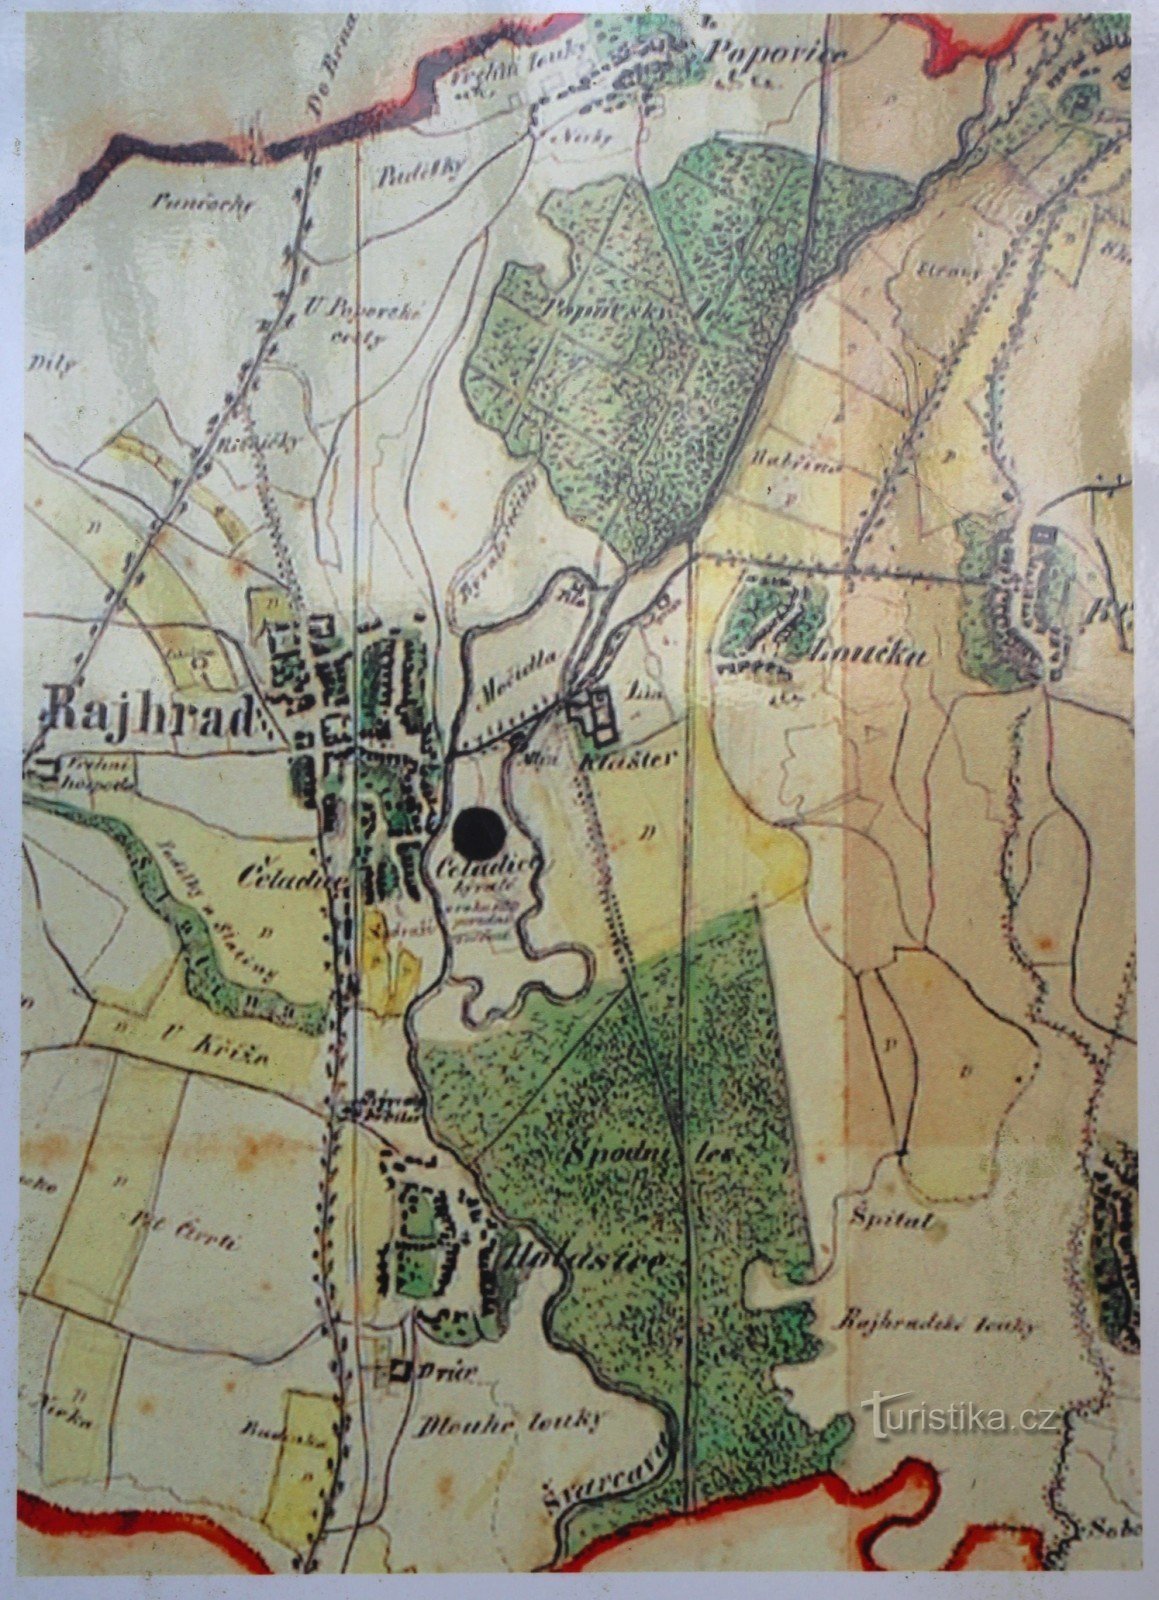 Mapa dos arredores do mosteiro de meados do século XIX, bem visível na metade inferior do mapa